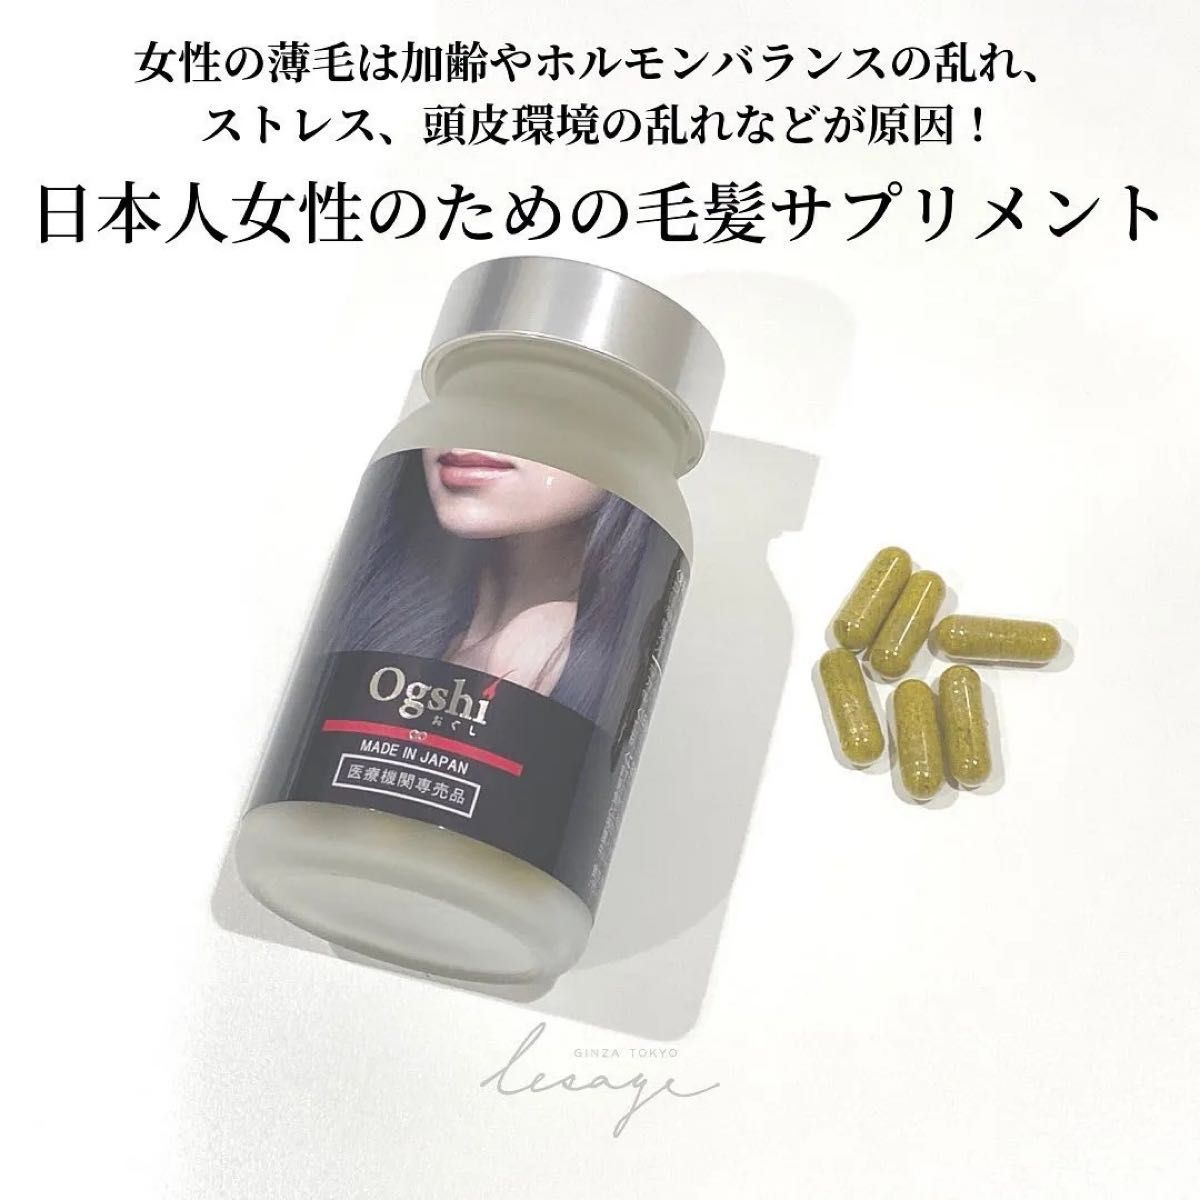 安価安価Ogshi(おぐし)2個セット 基礎化粧品 | purcellcom.com